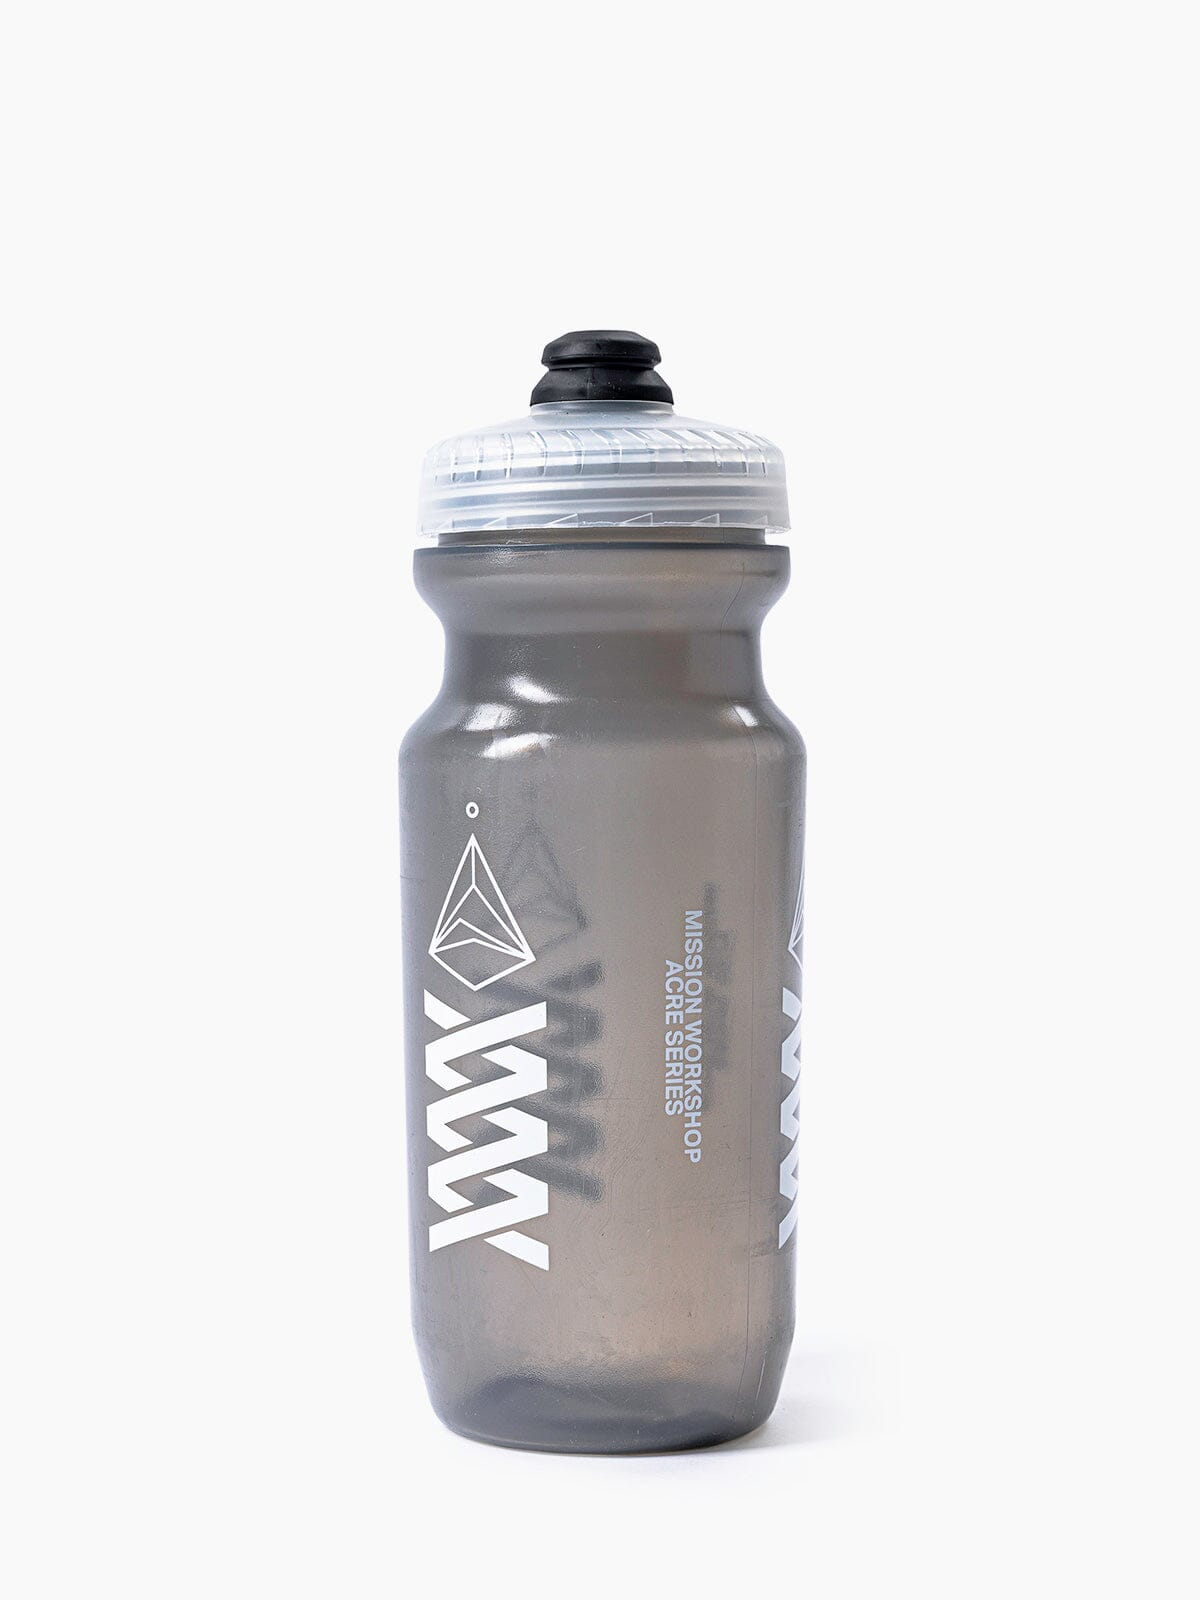 Acre Series Water Bottle by Mission Workshop - Weerbestendige tassen & technische kleding - San Francisco & Los Angeles - Gemaakt om te weerstaan - Voor altijd gegarandeerd